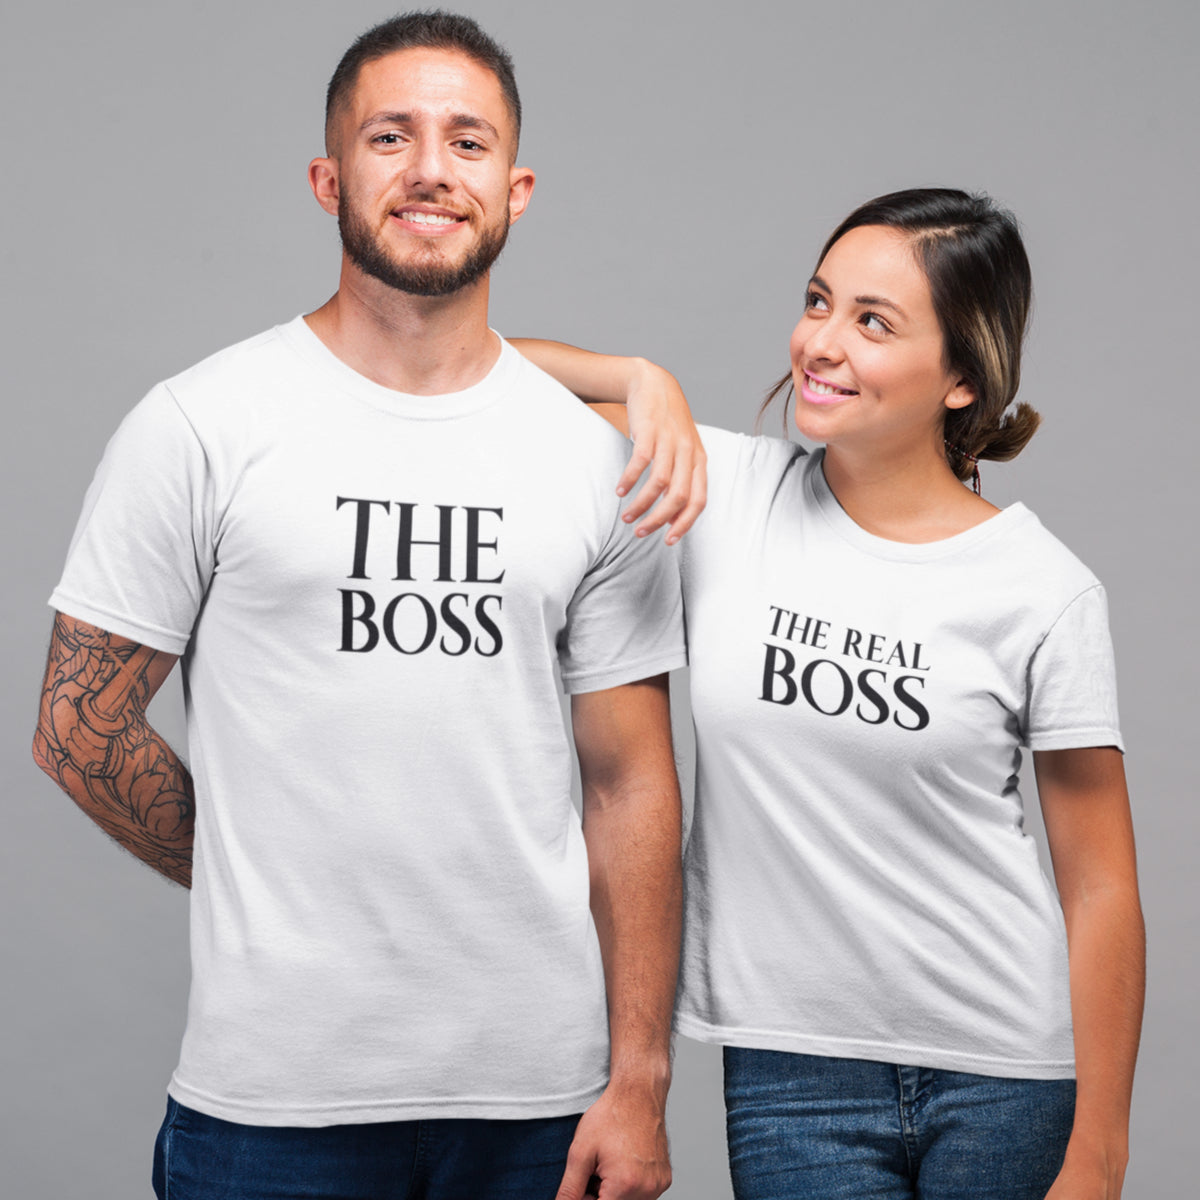 Balti unisex marškinėliai poroms "The boss & The real boss“ Vyriškas dizainas